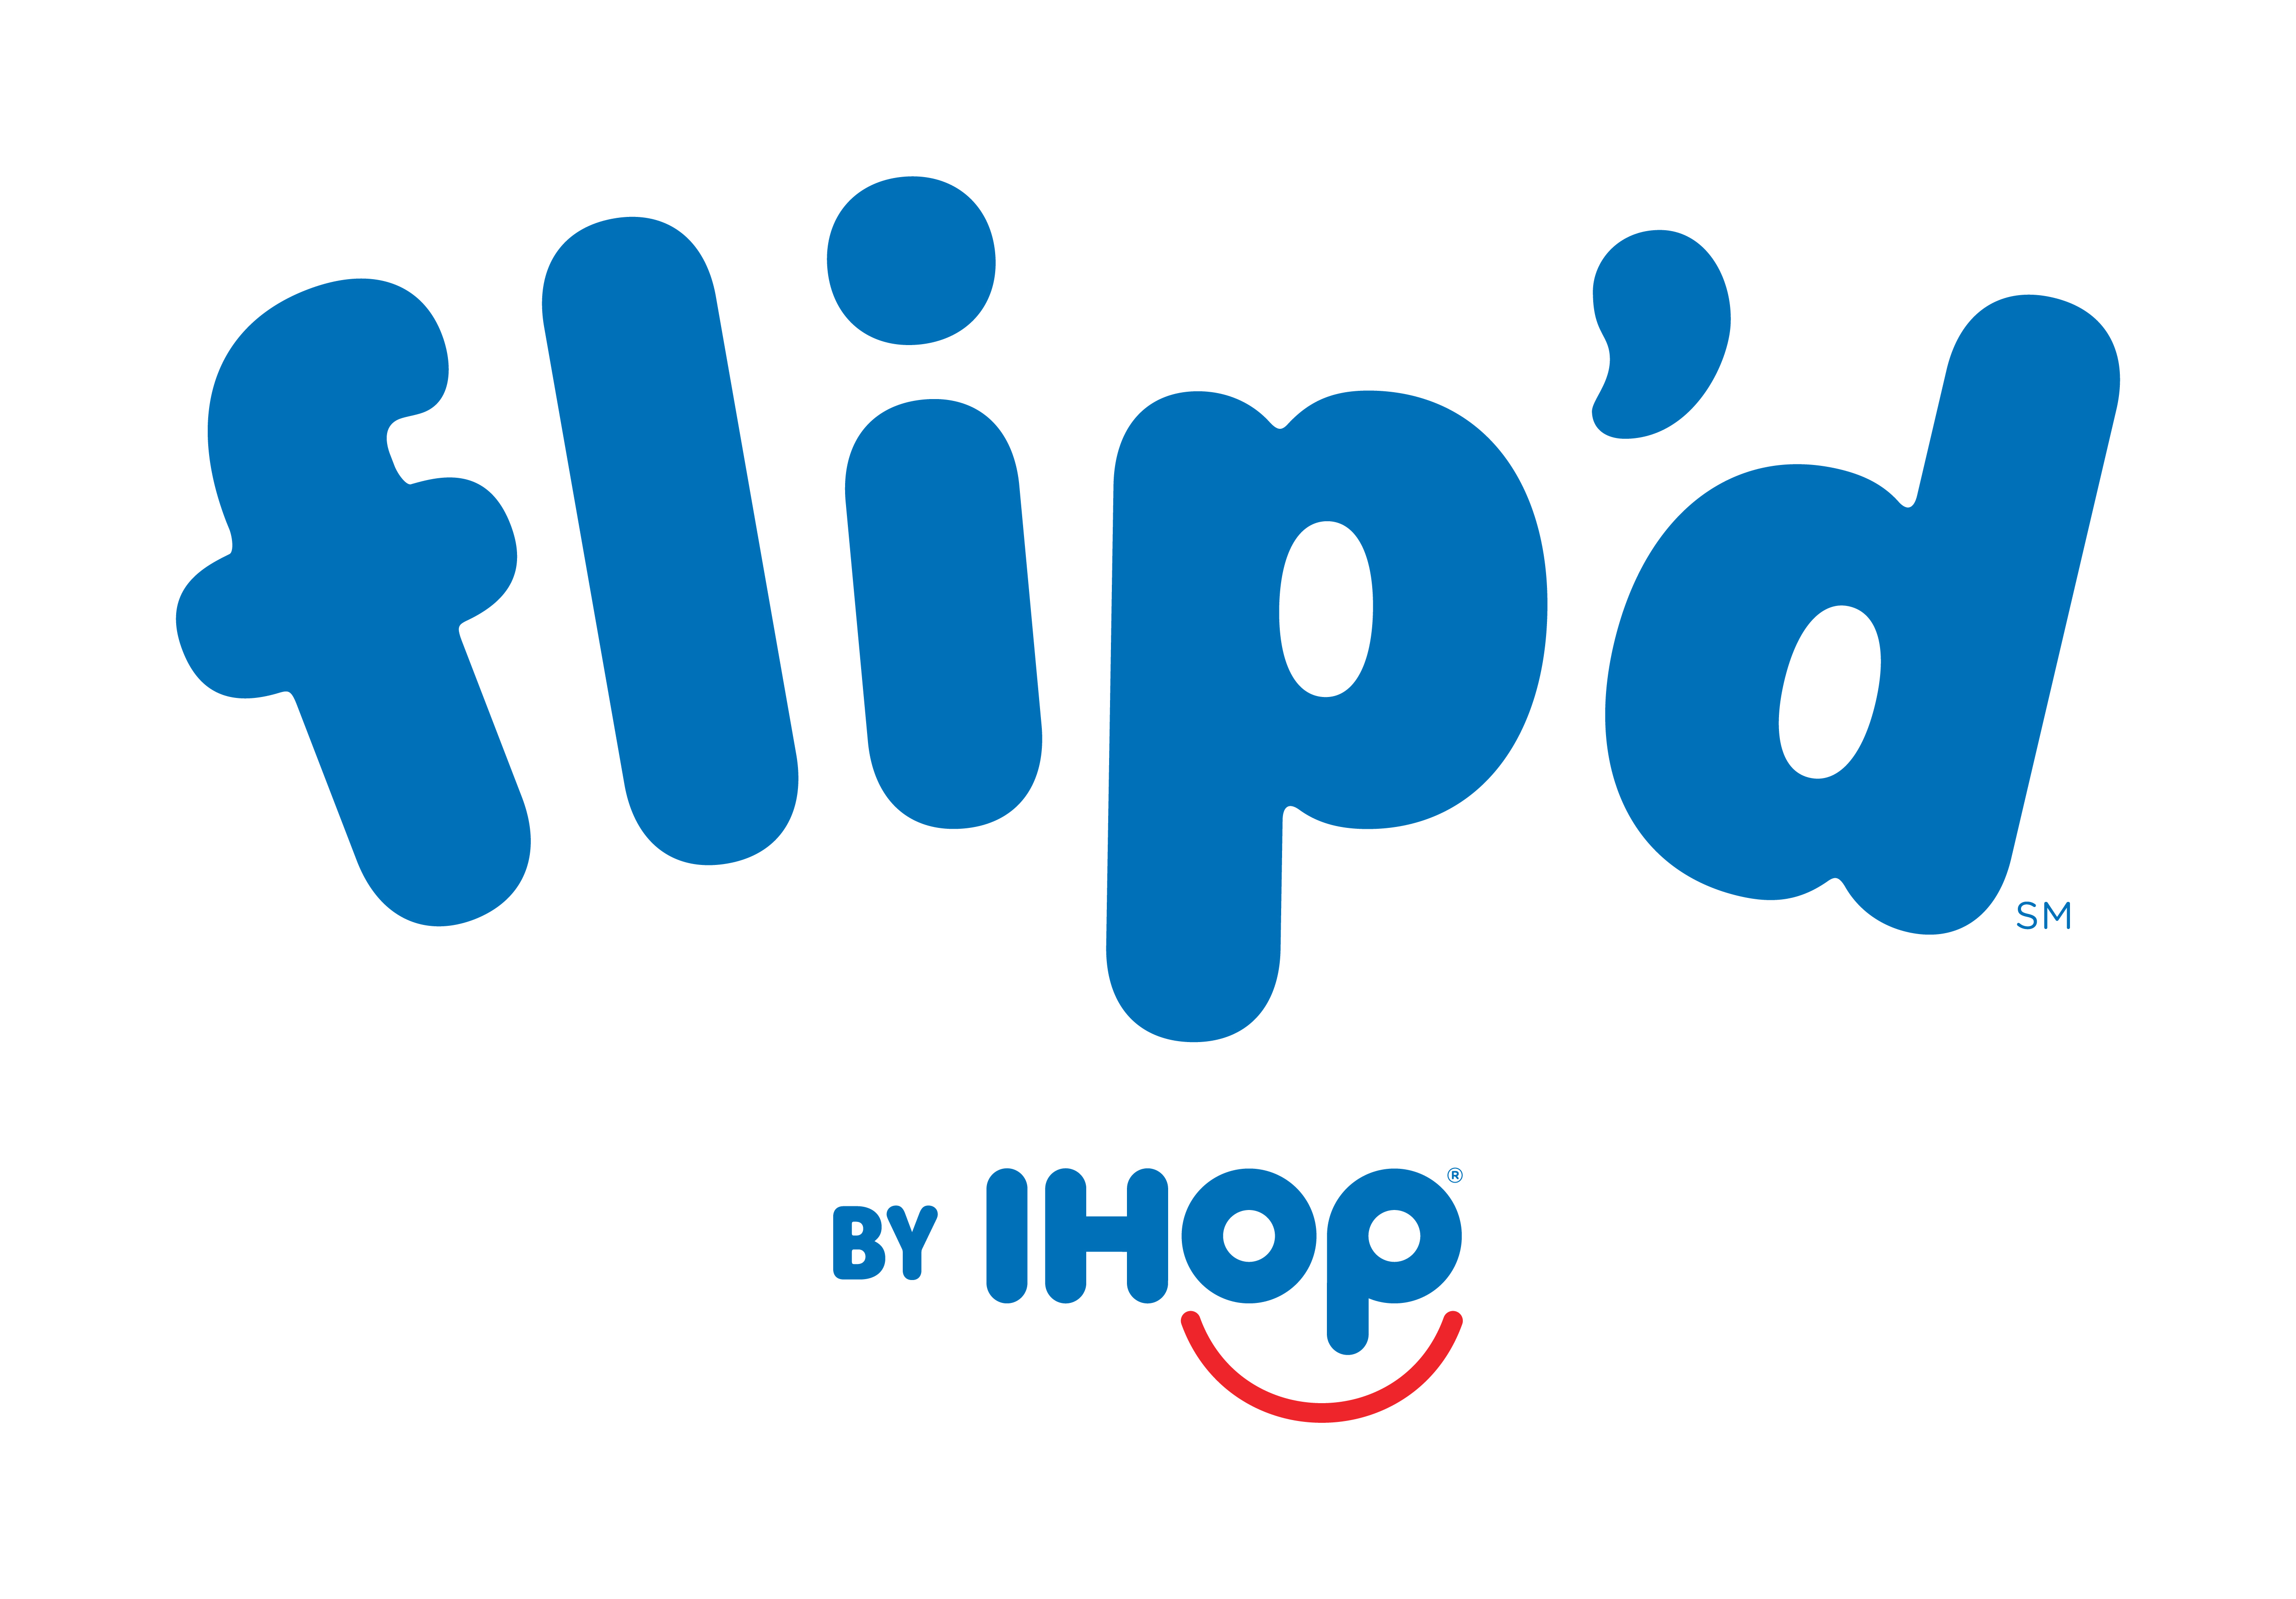 Flip'd by IHOP opens near Baruch – The Ticker